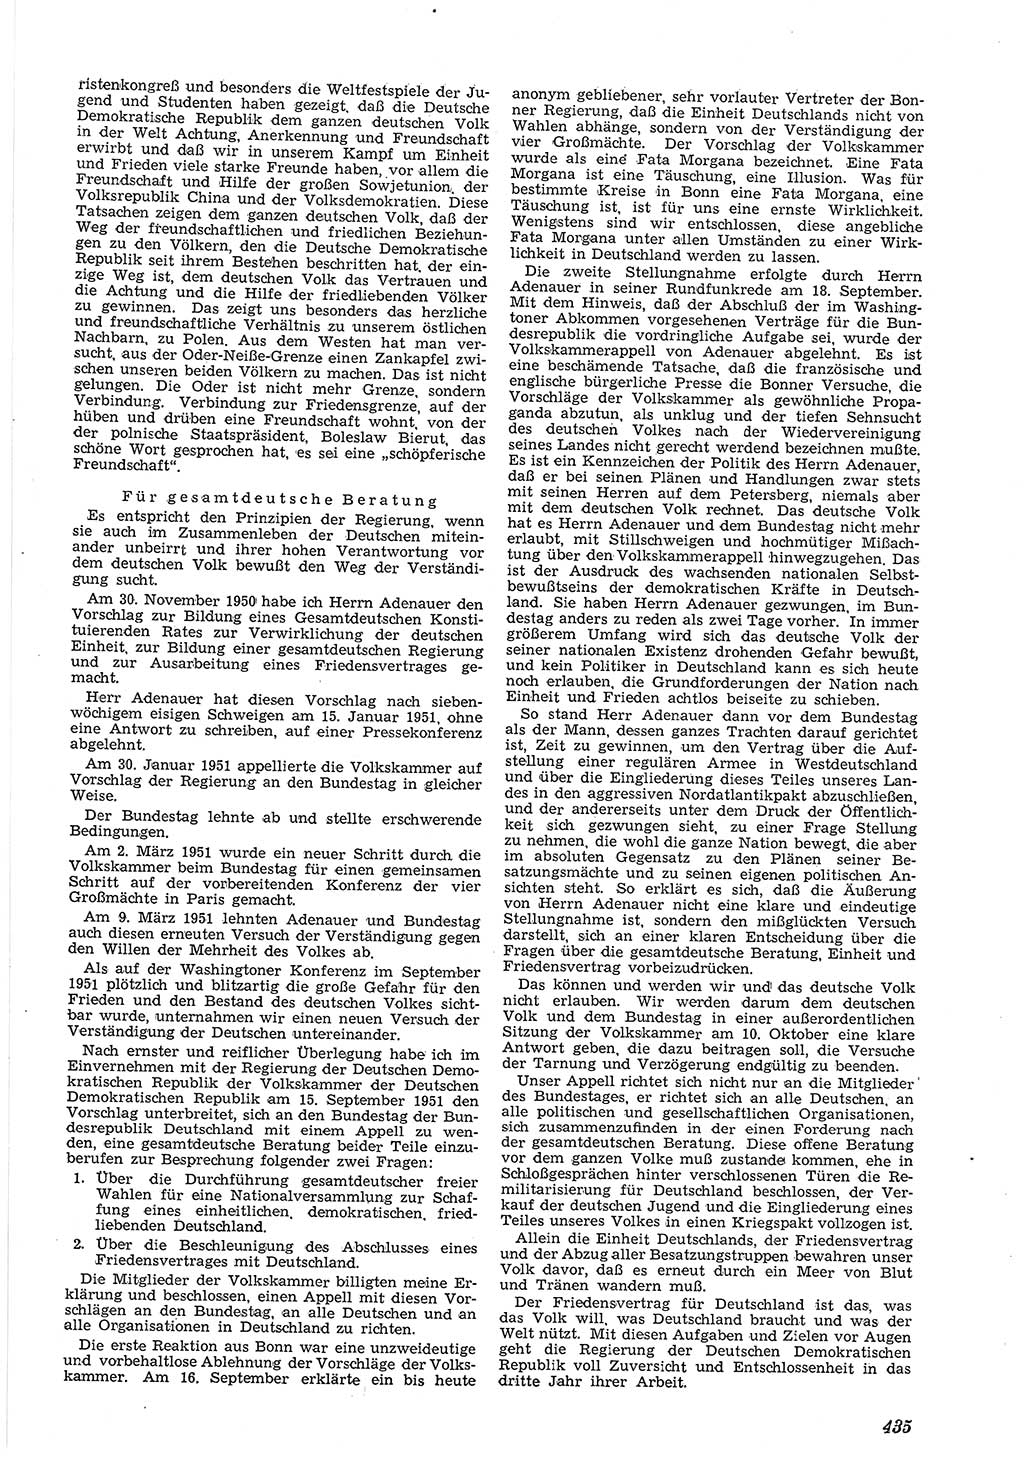 Neue Justiz (NJ), Zeitschrift für Recht und Rechtswissenschaft [Deutsche Demokratische Republik (DDR)], 5. Jahrgang 1951, Seite 435 (NJ DDR 1951, S. 435)